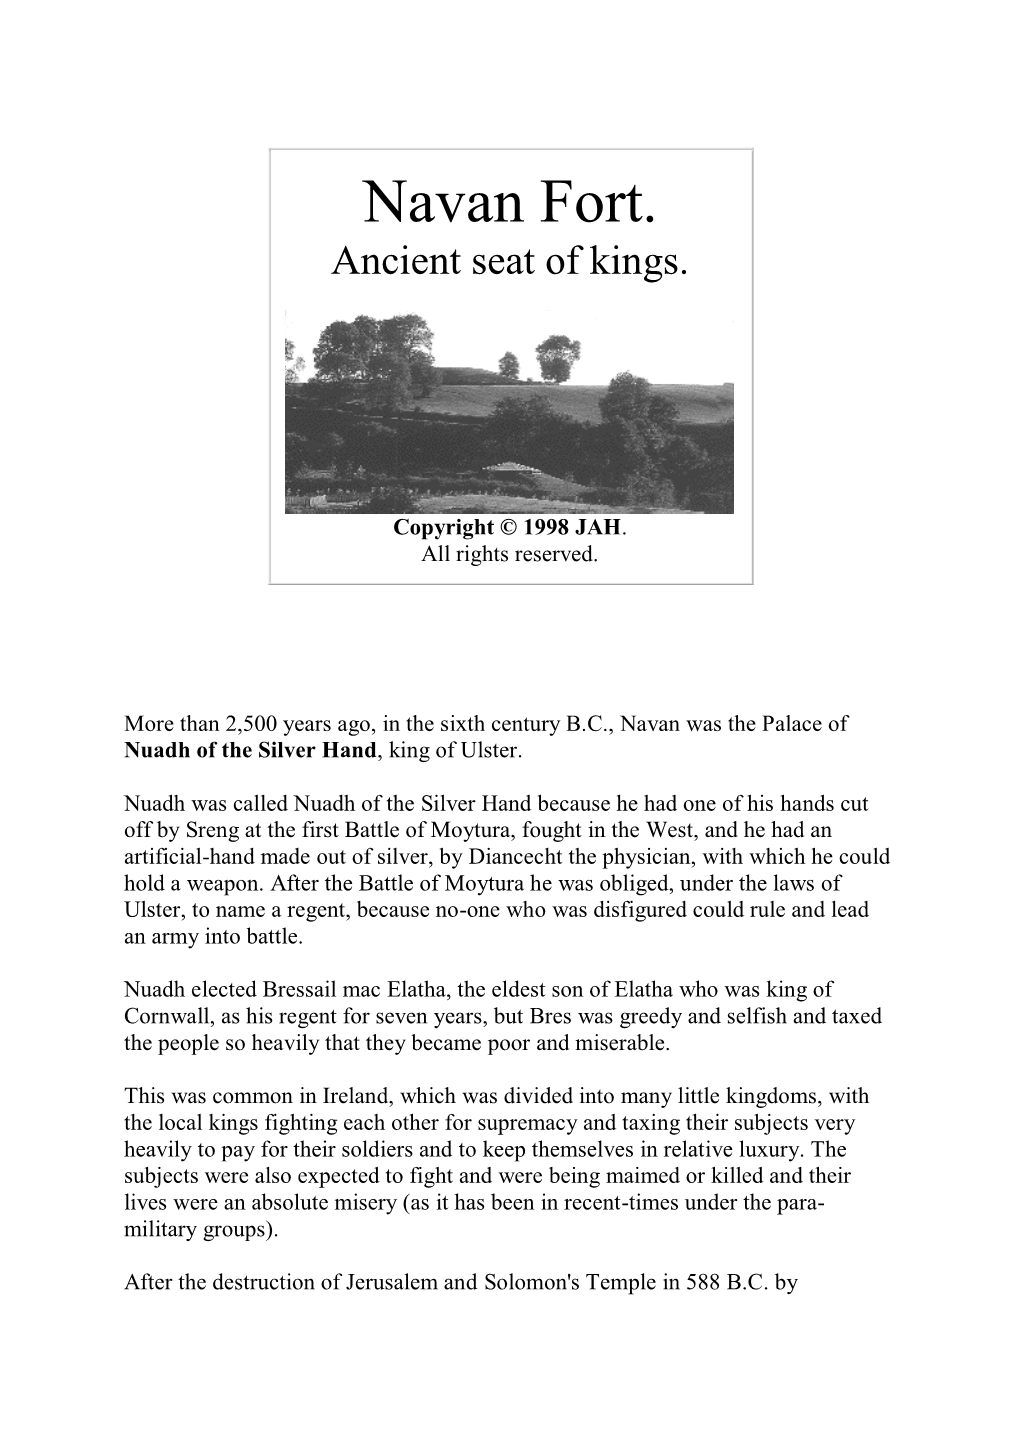 Navan Fort. Ancient Seat of Kings